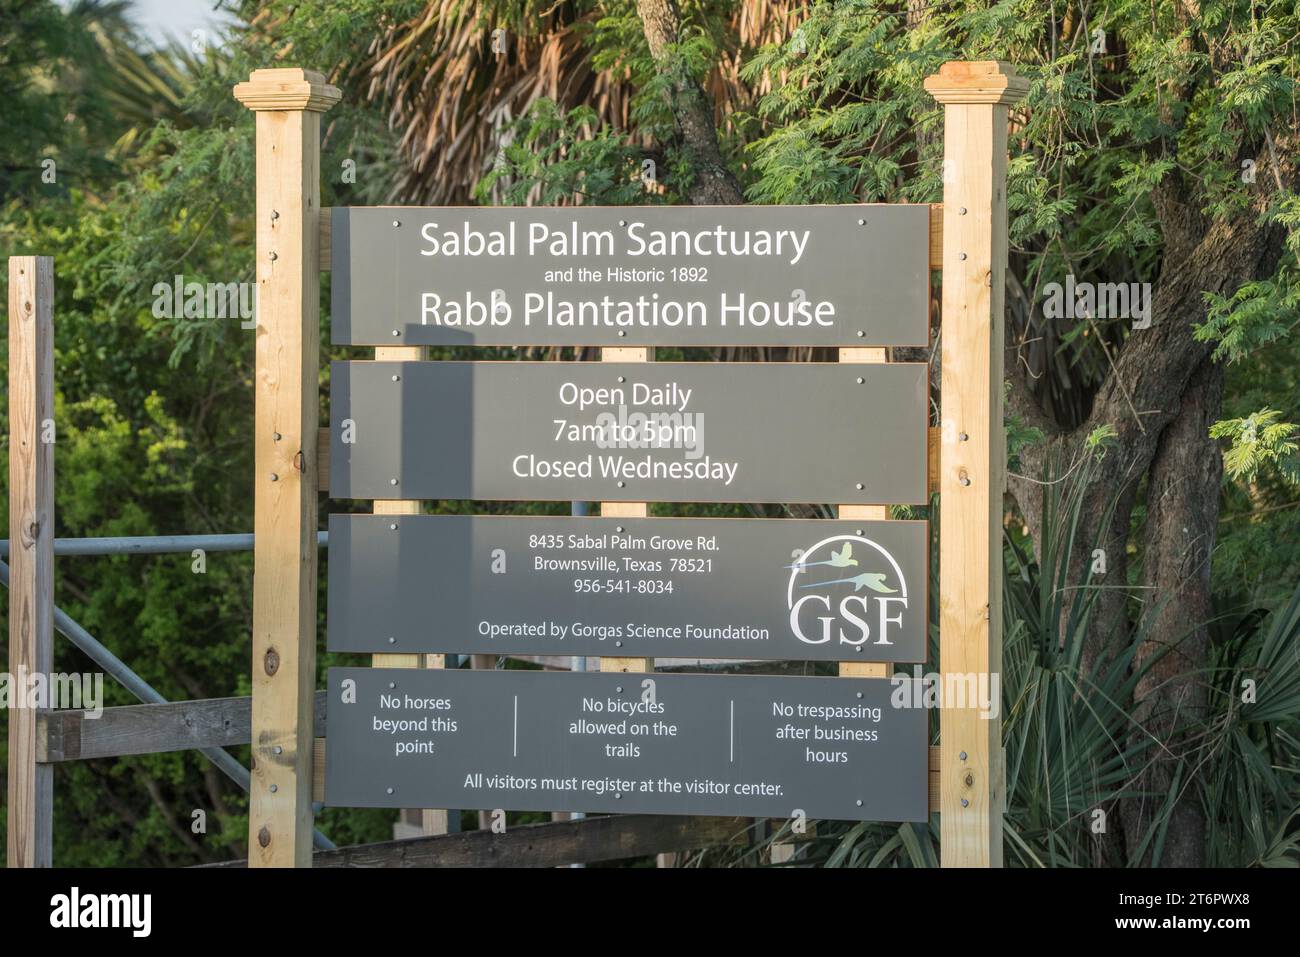 Sabal Palm Sanctuary und das historische Rabb Plantation House, gute Vogelbeobachtung, Vogelbeobachtung, Brownsville, Texas, USA Stockfoto